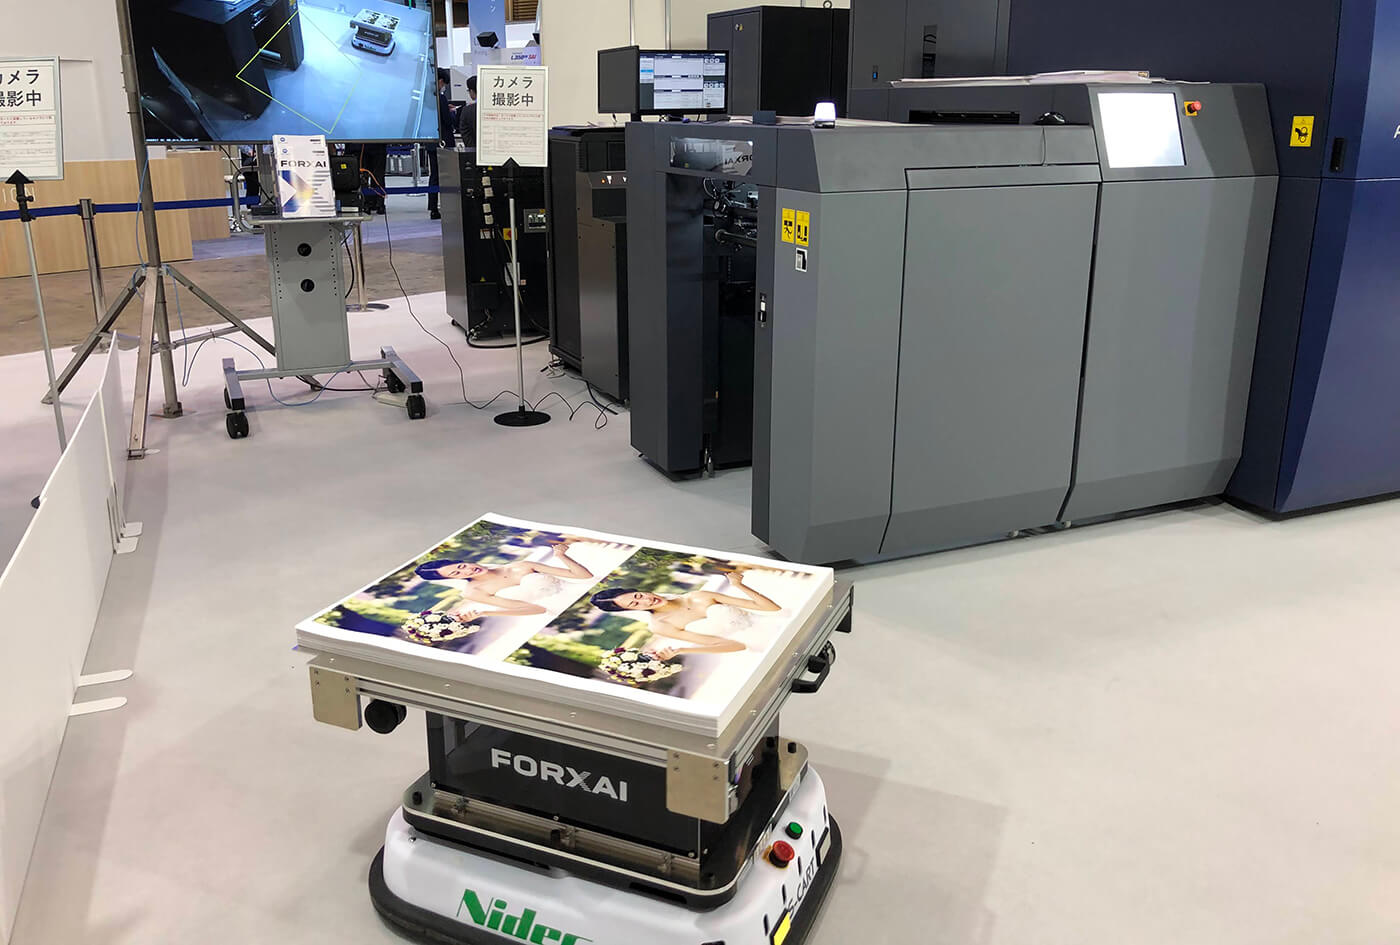 FORXAIによる自動搬送ロボットデモの画像